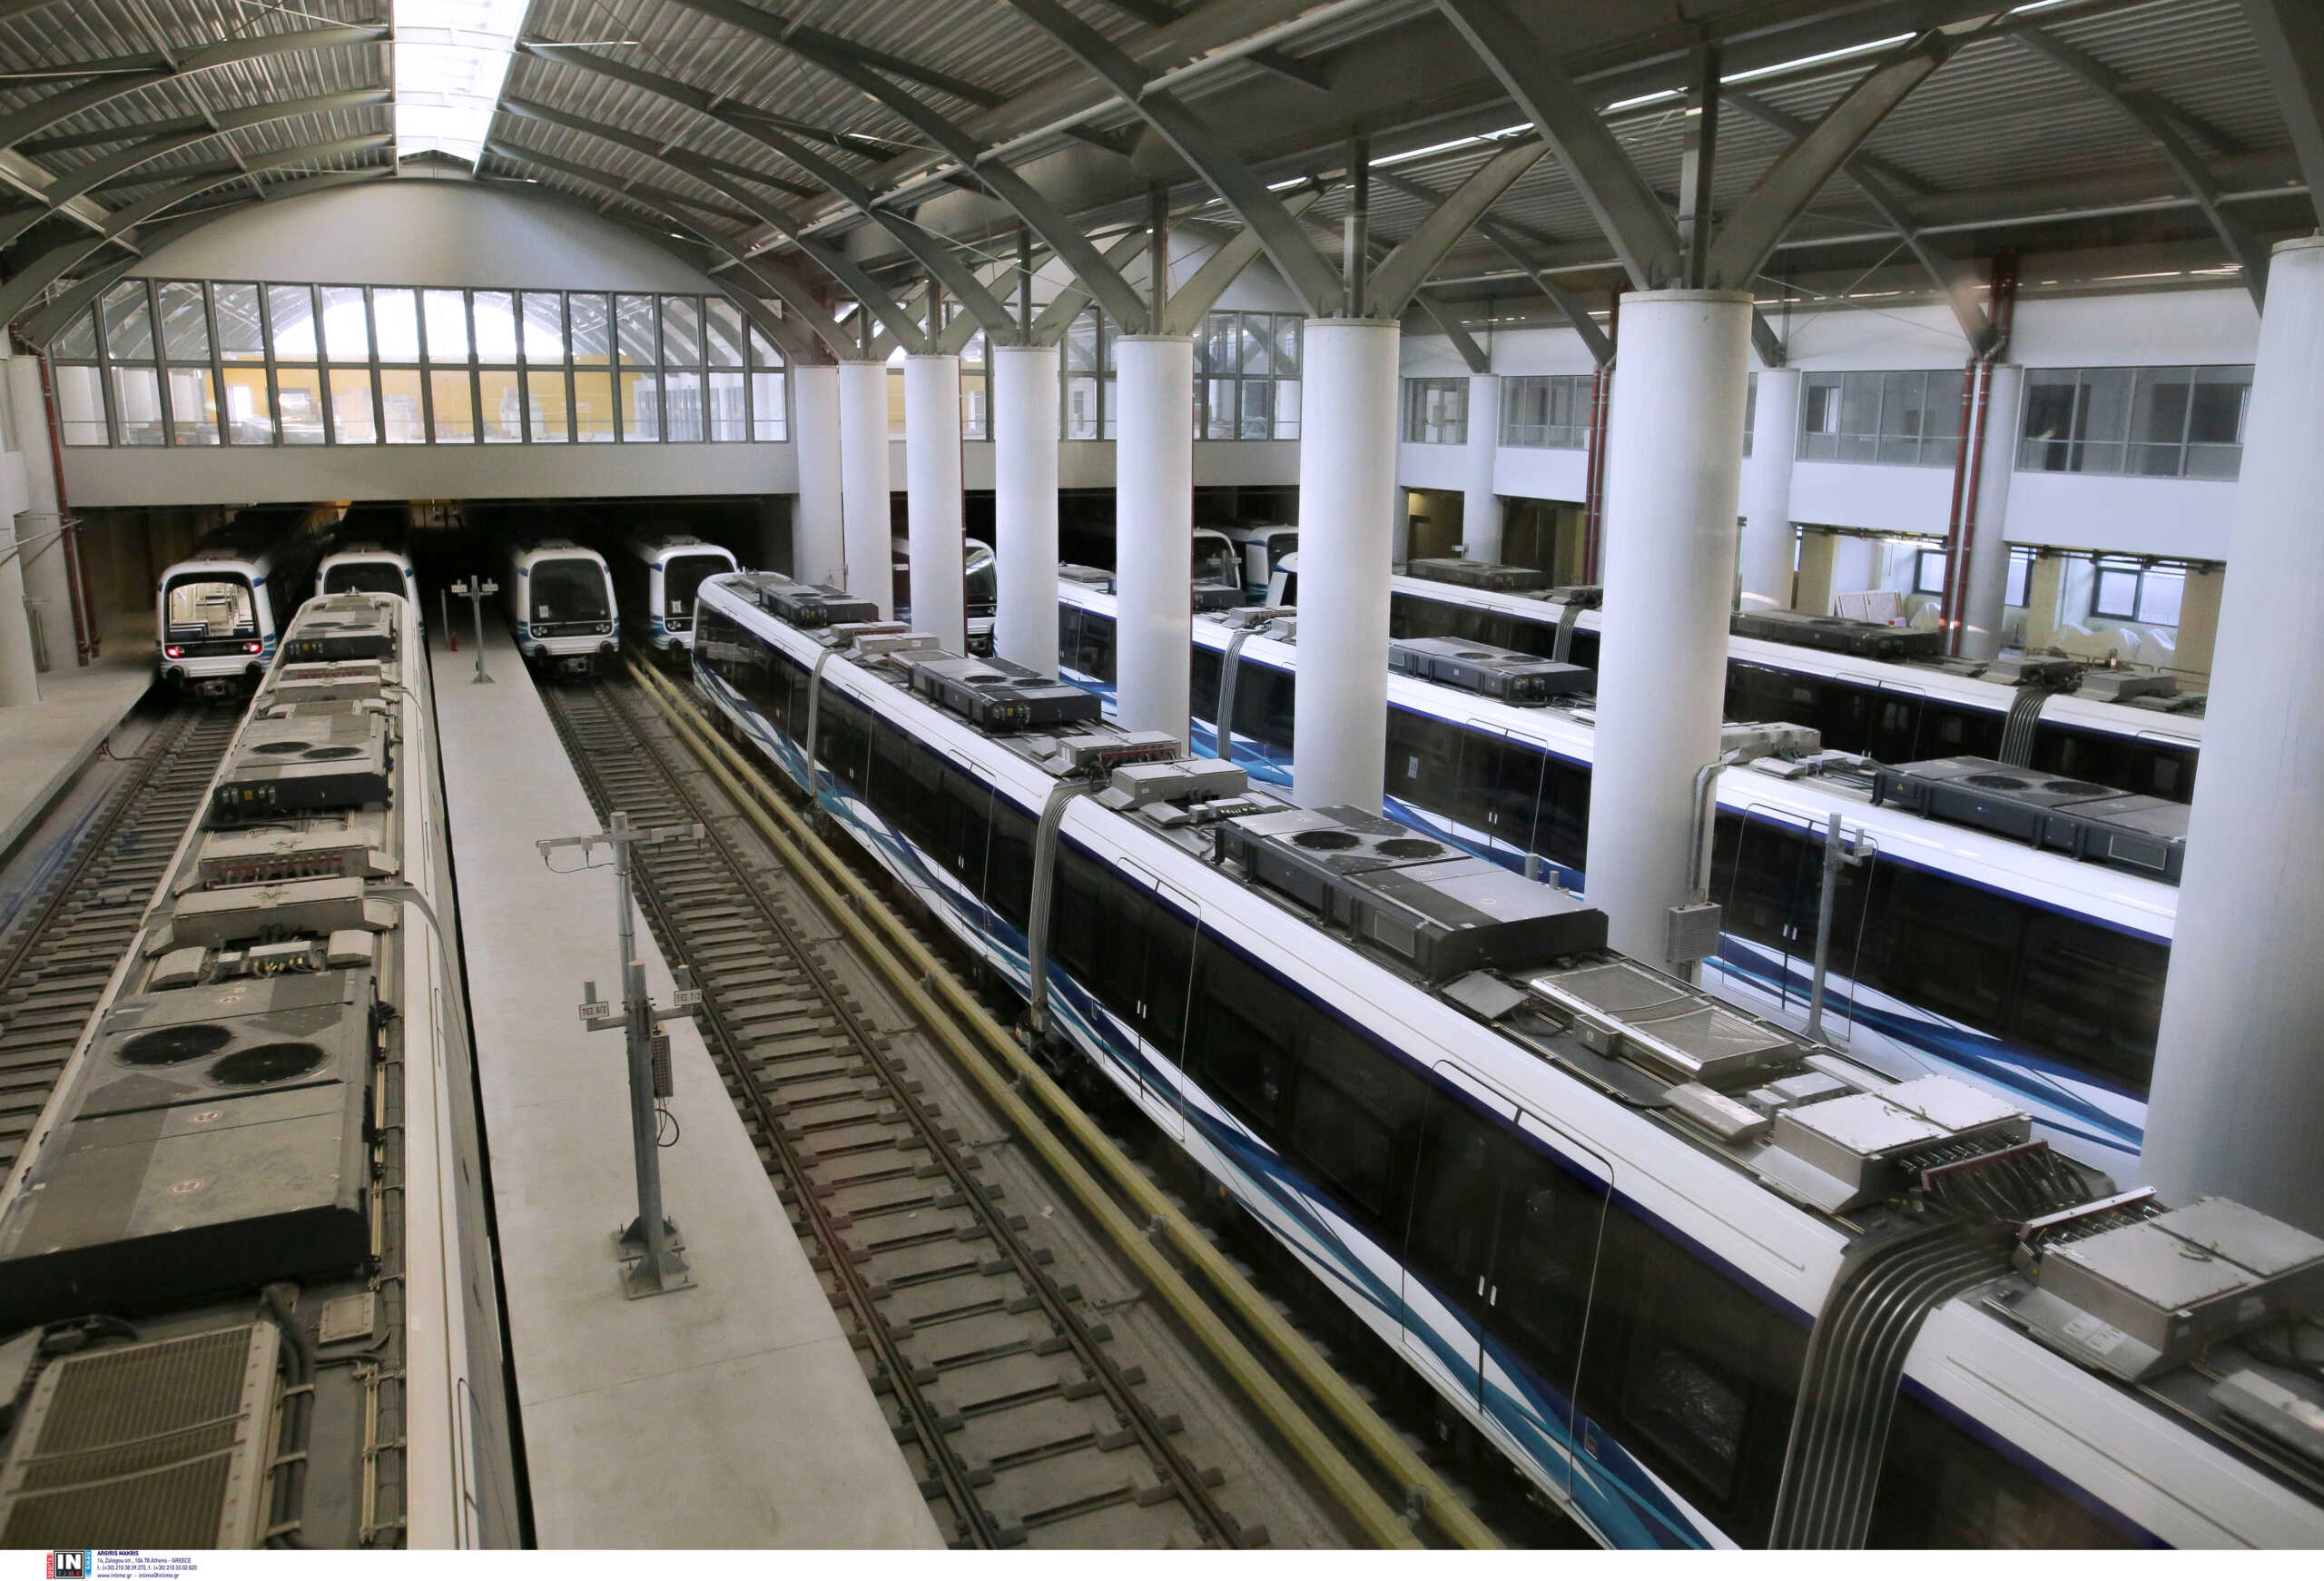 Μετρό Θεσσαλονίκης: Αιχμές για τις καθυστερήσεις από το επαγγελματικό επιμελητήριο της πόλης